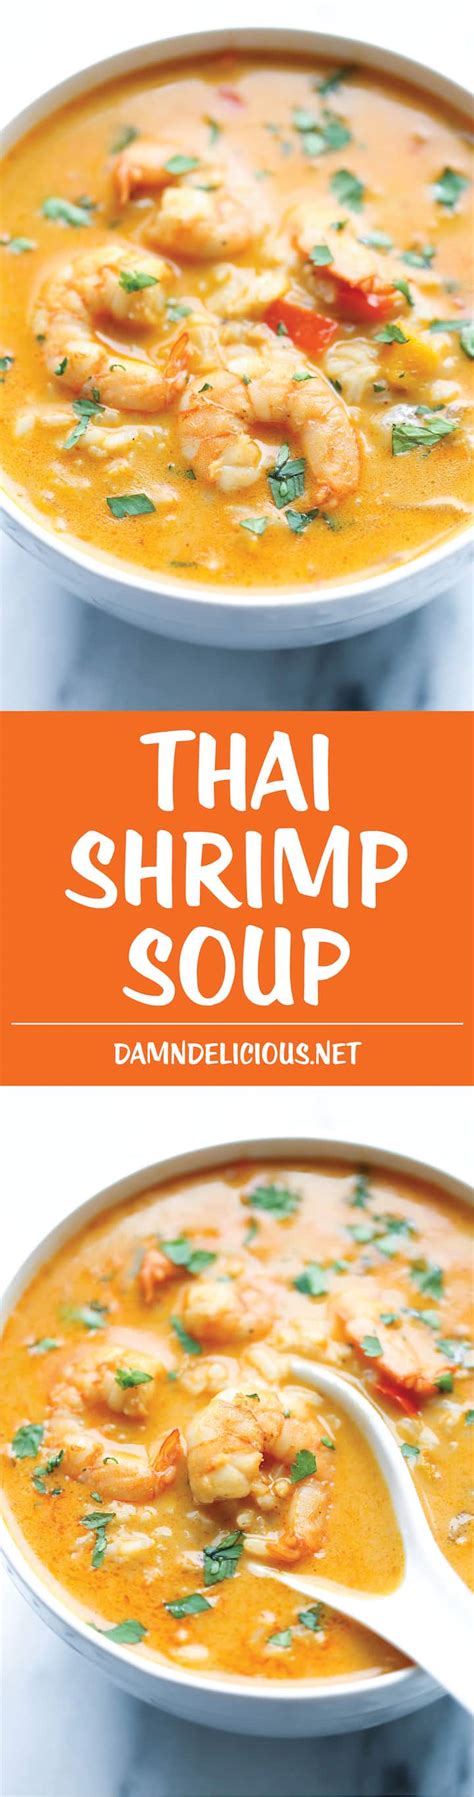 Easy Thai Shrimp Soup Damn Delicious